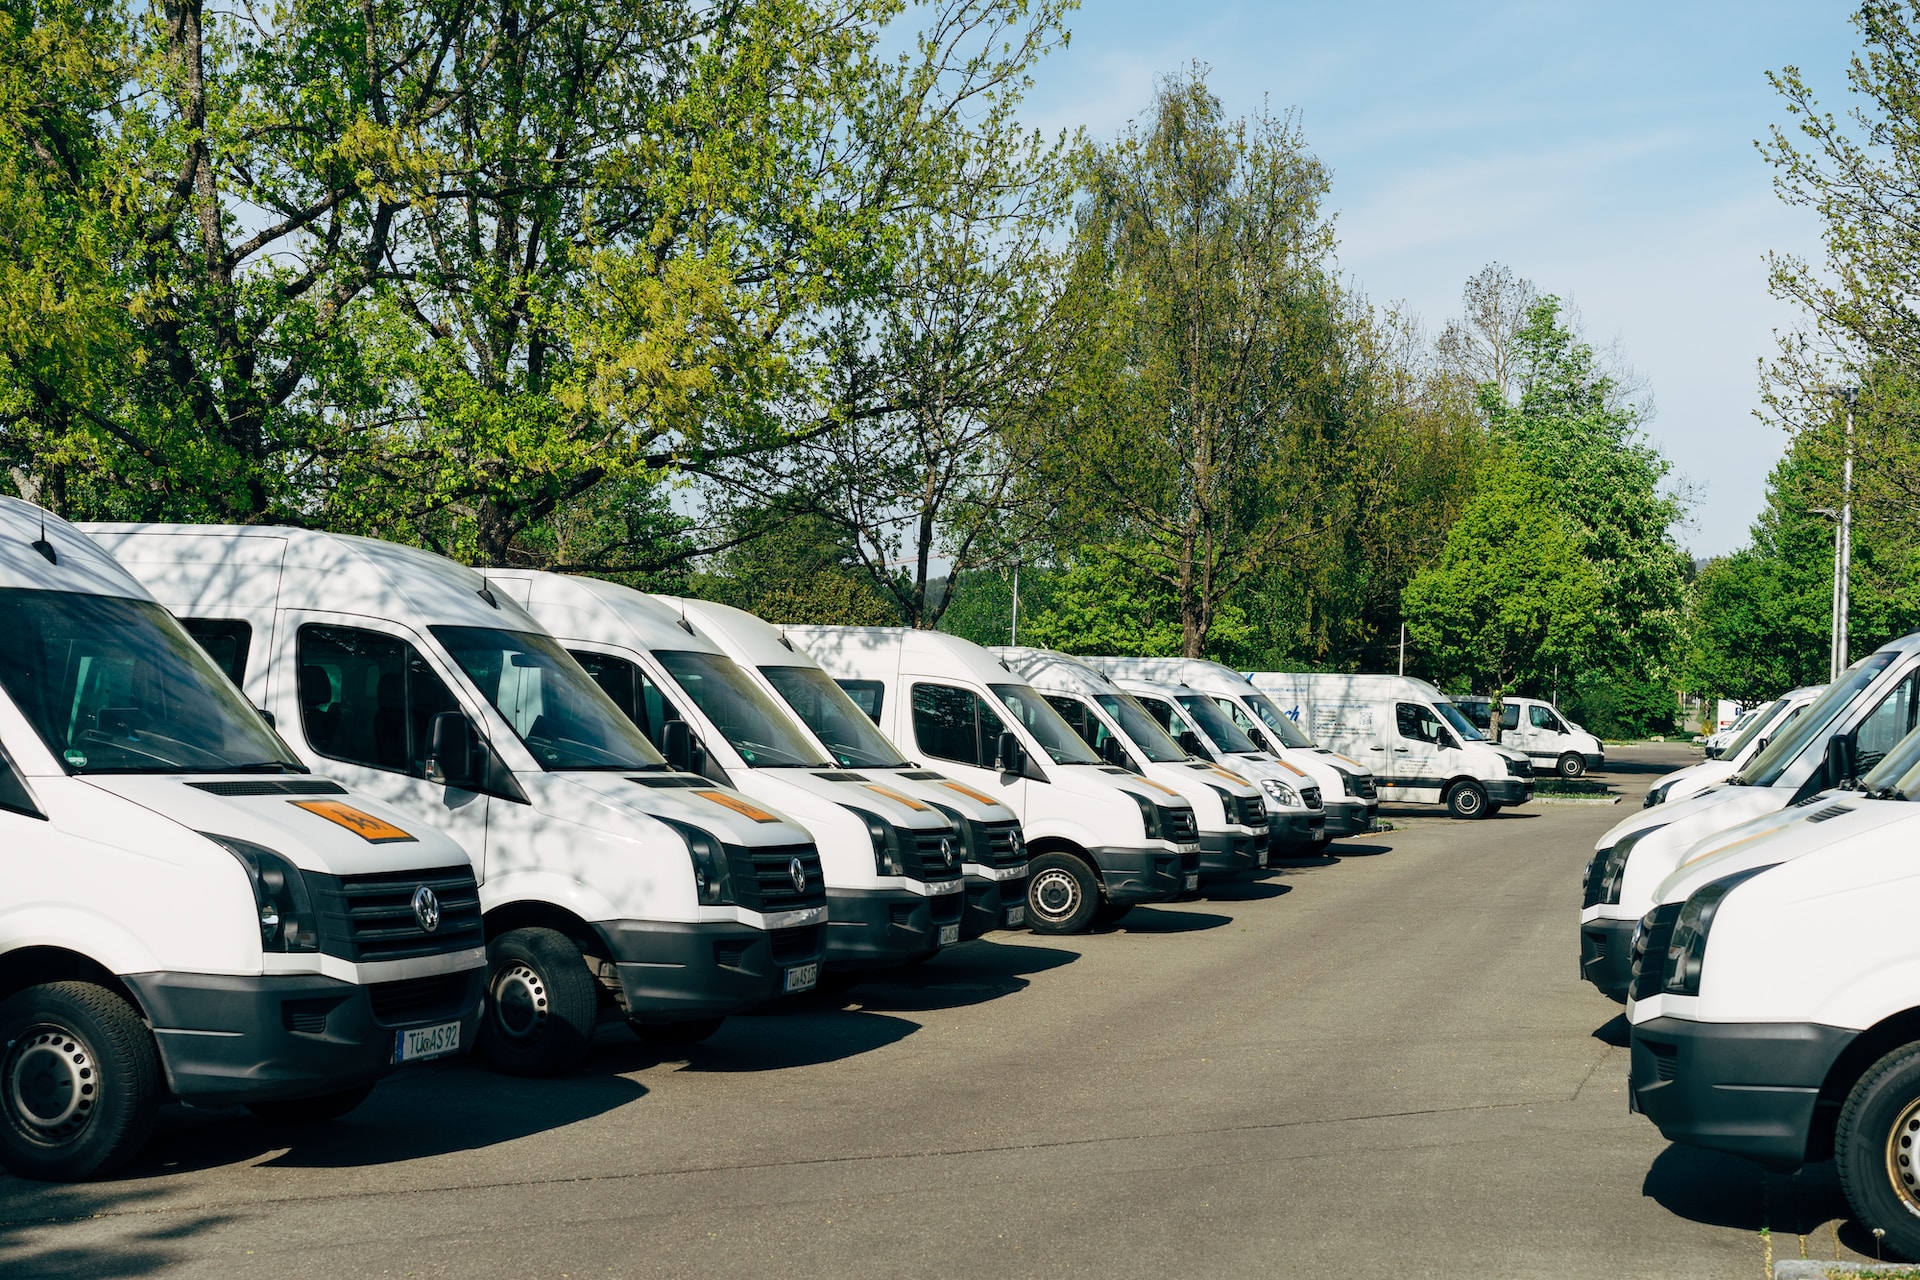 A car park full of company vans